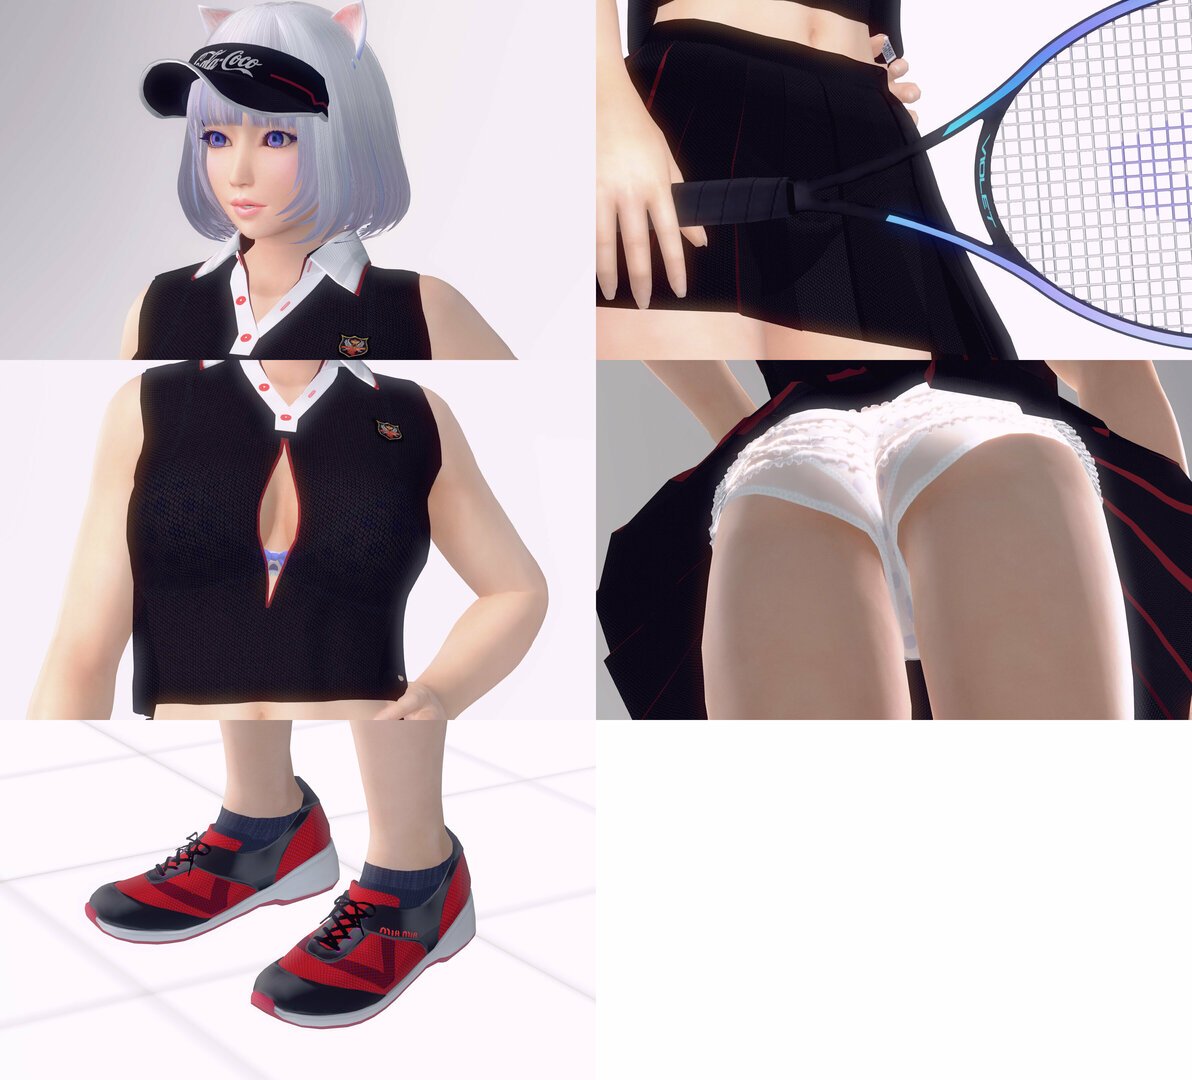 Tennis wear_0233.jpg